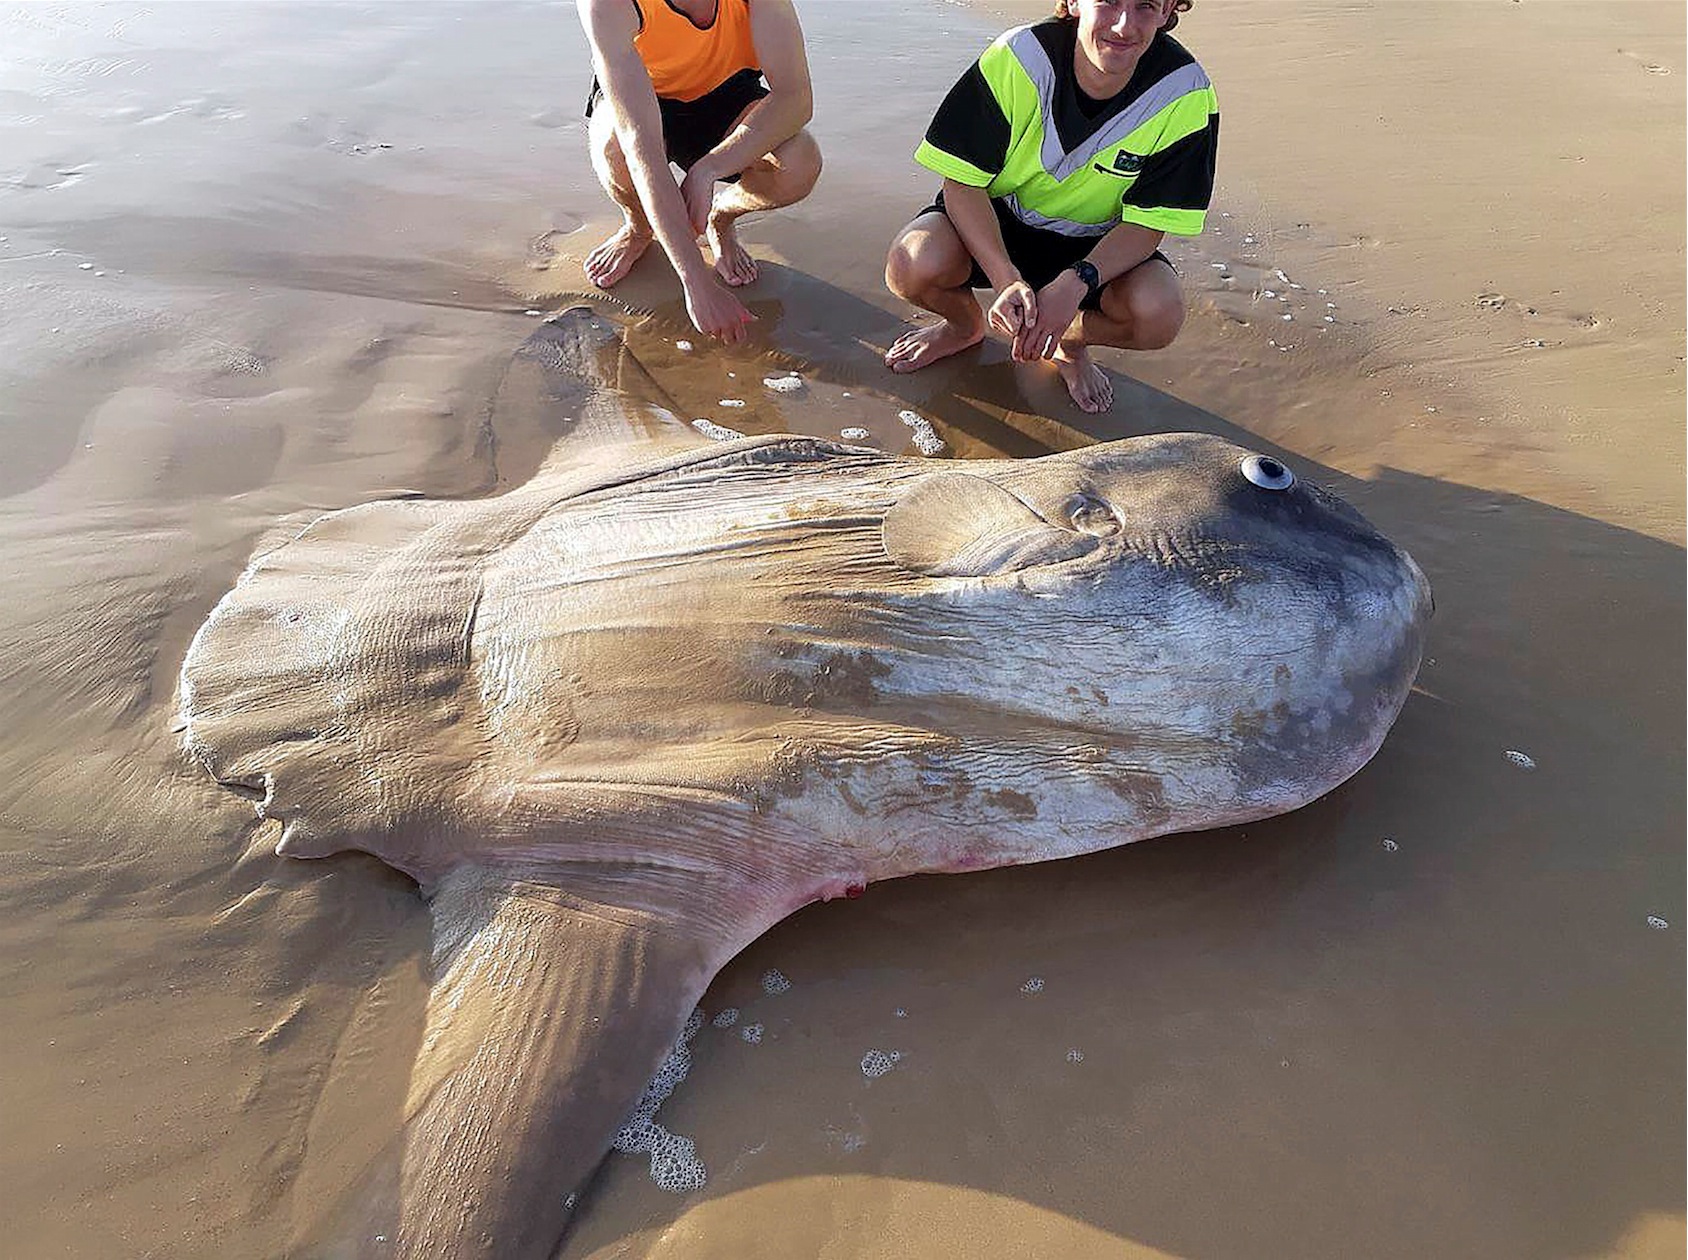 Un poisson-lune géant échoué au sud de l'Australie [PHOTOS]